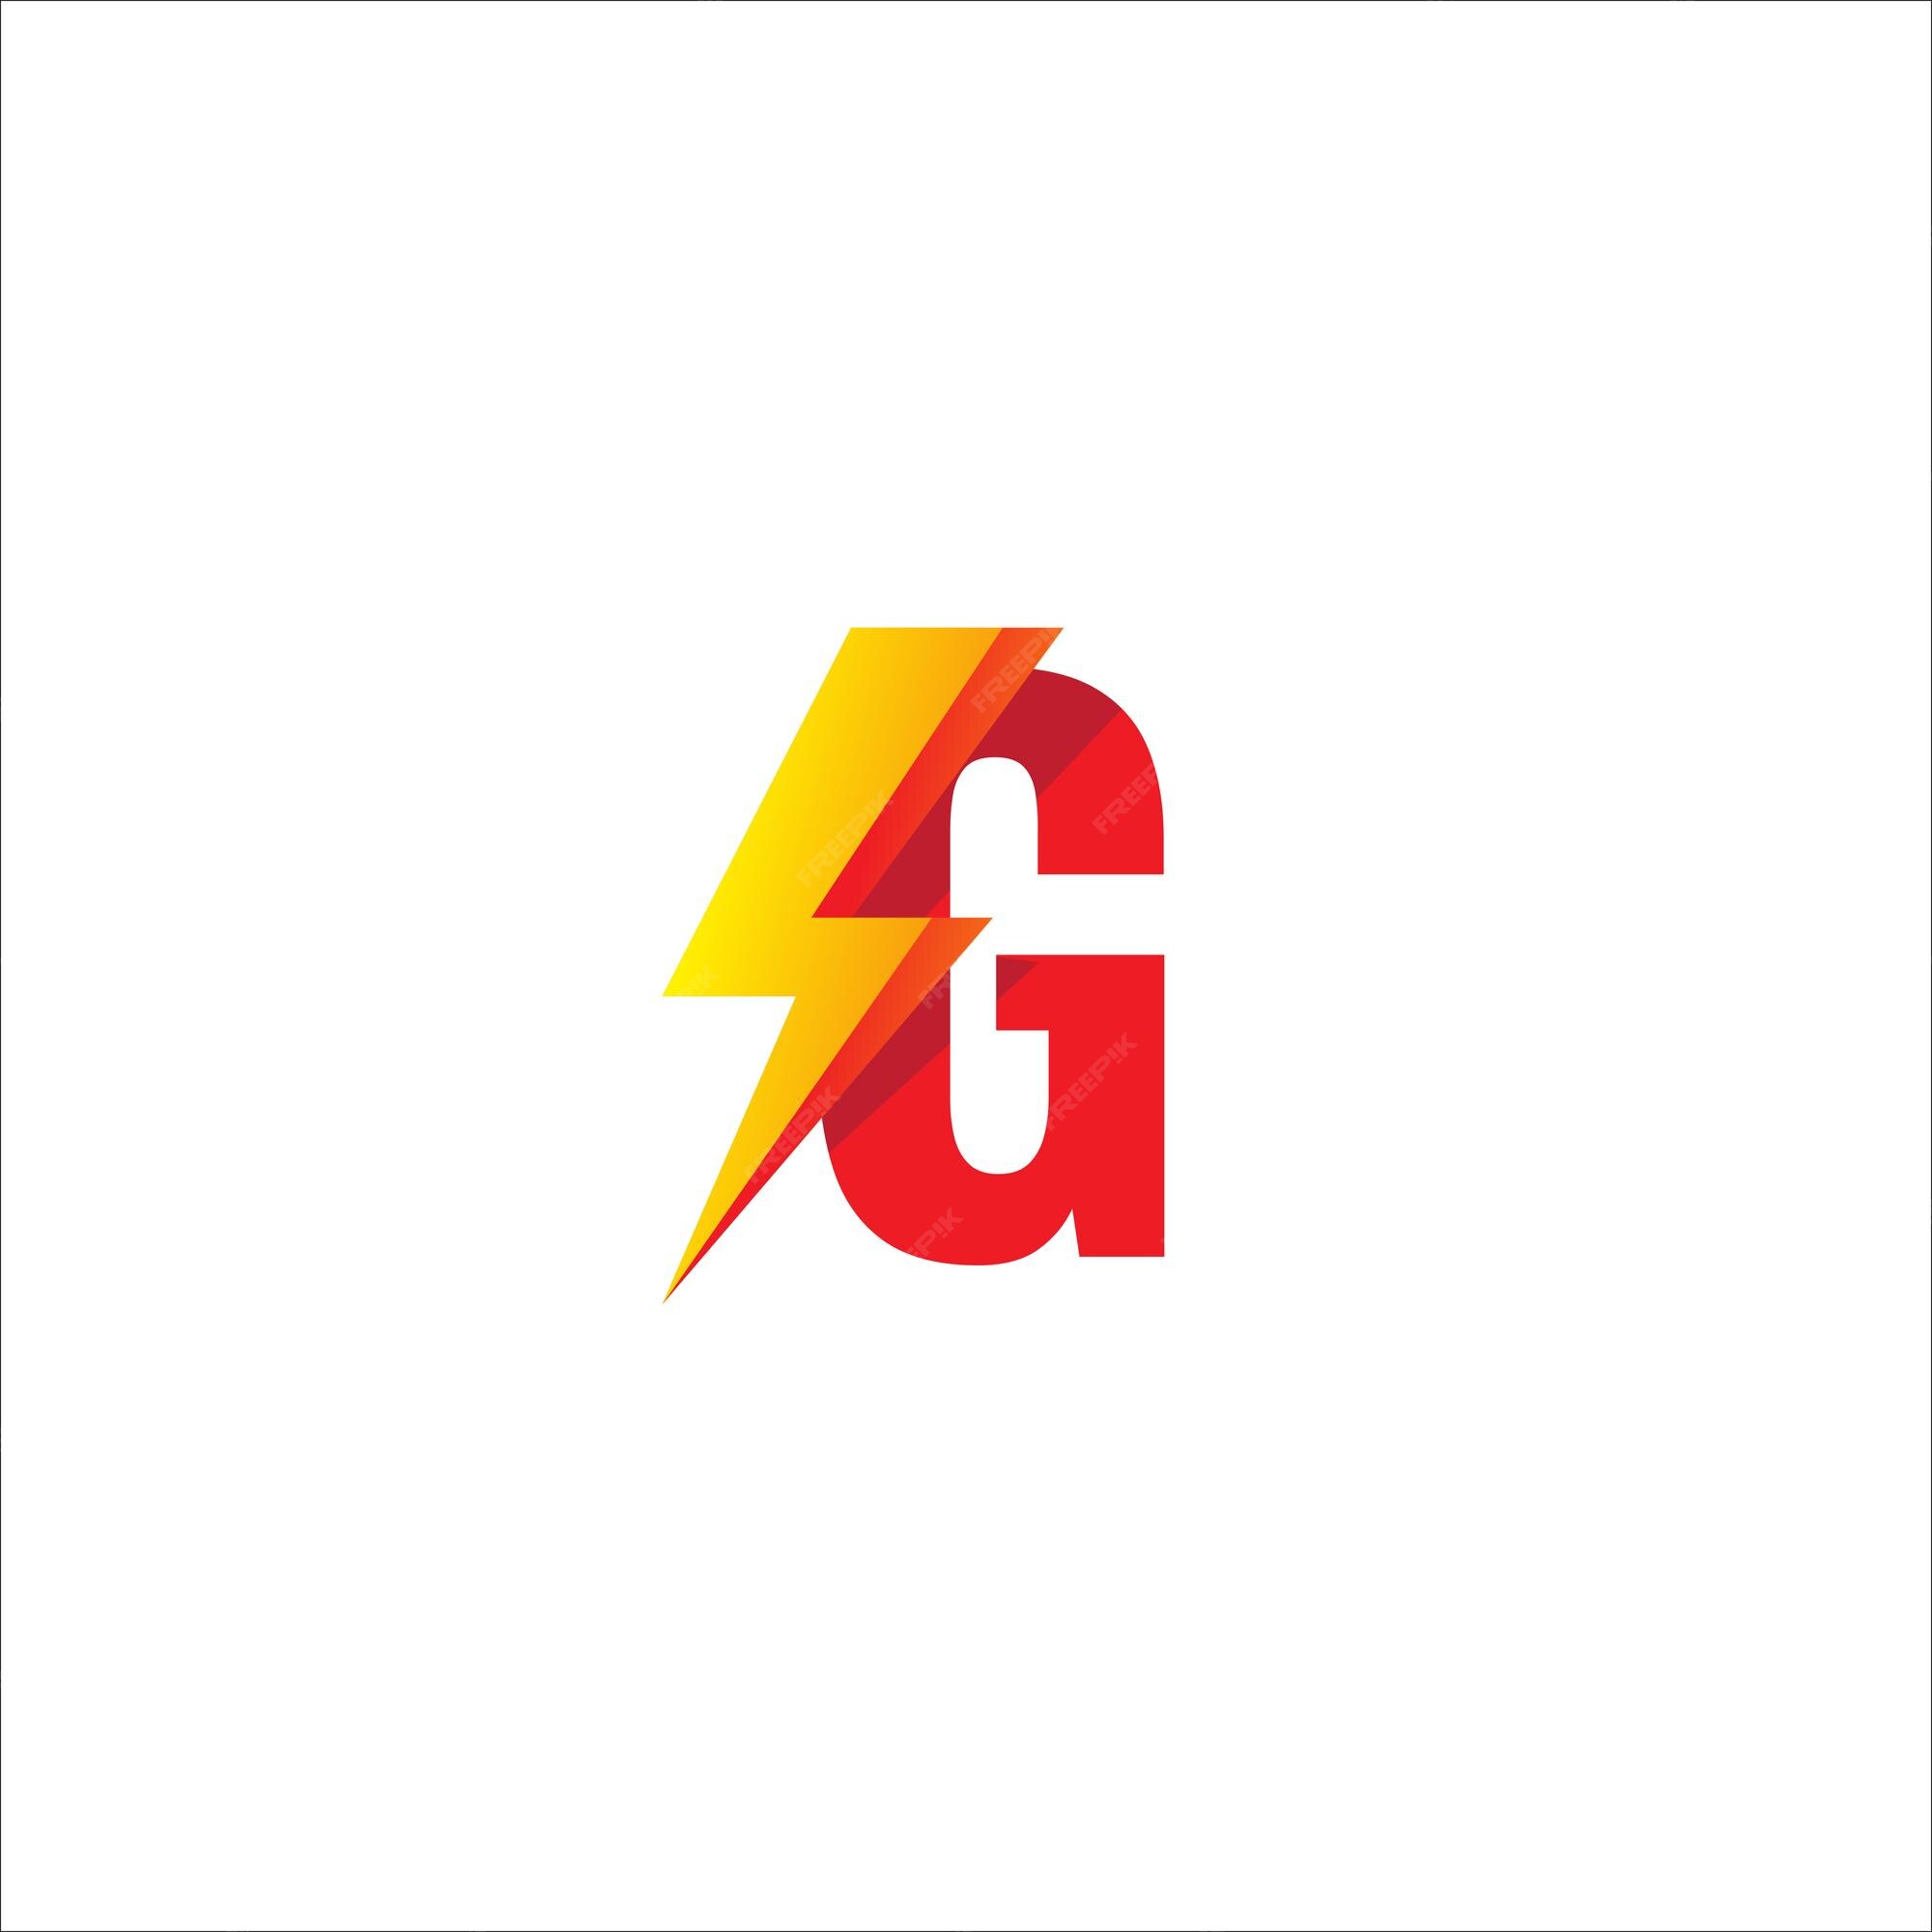 Hãy đến và chiêm ngưỡng thiết kế logo chữ G in đầu độc đáo, sáng tạo, làm từ những đường nét tinh tế. Logo này thể hiện tính cách của công ty bạn và giúp bạn nổi bật trong làng kinh doanh. Hãy cùng chúng tôi tìm hiểu chi tiết về thiết kế này nhé!